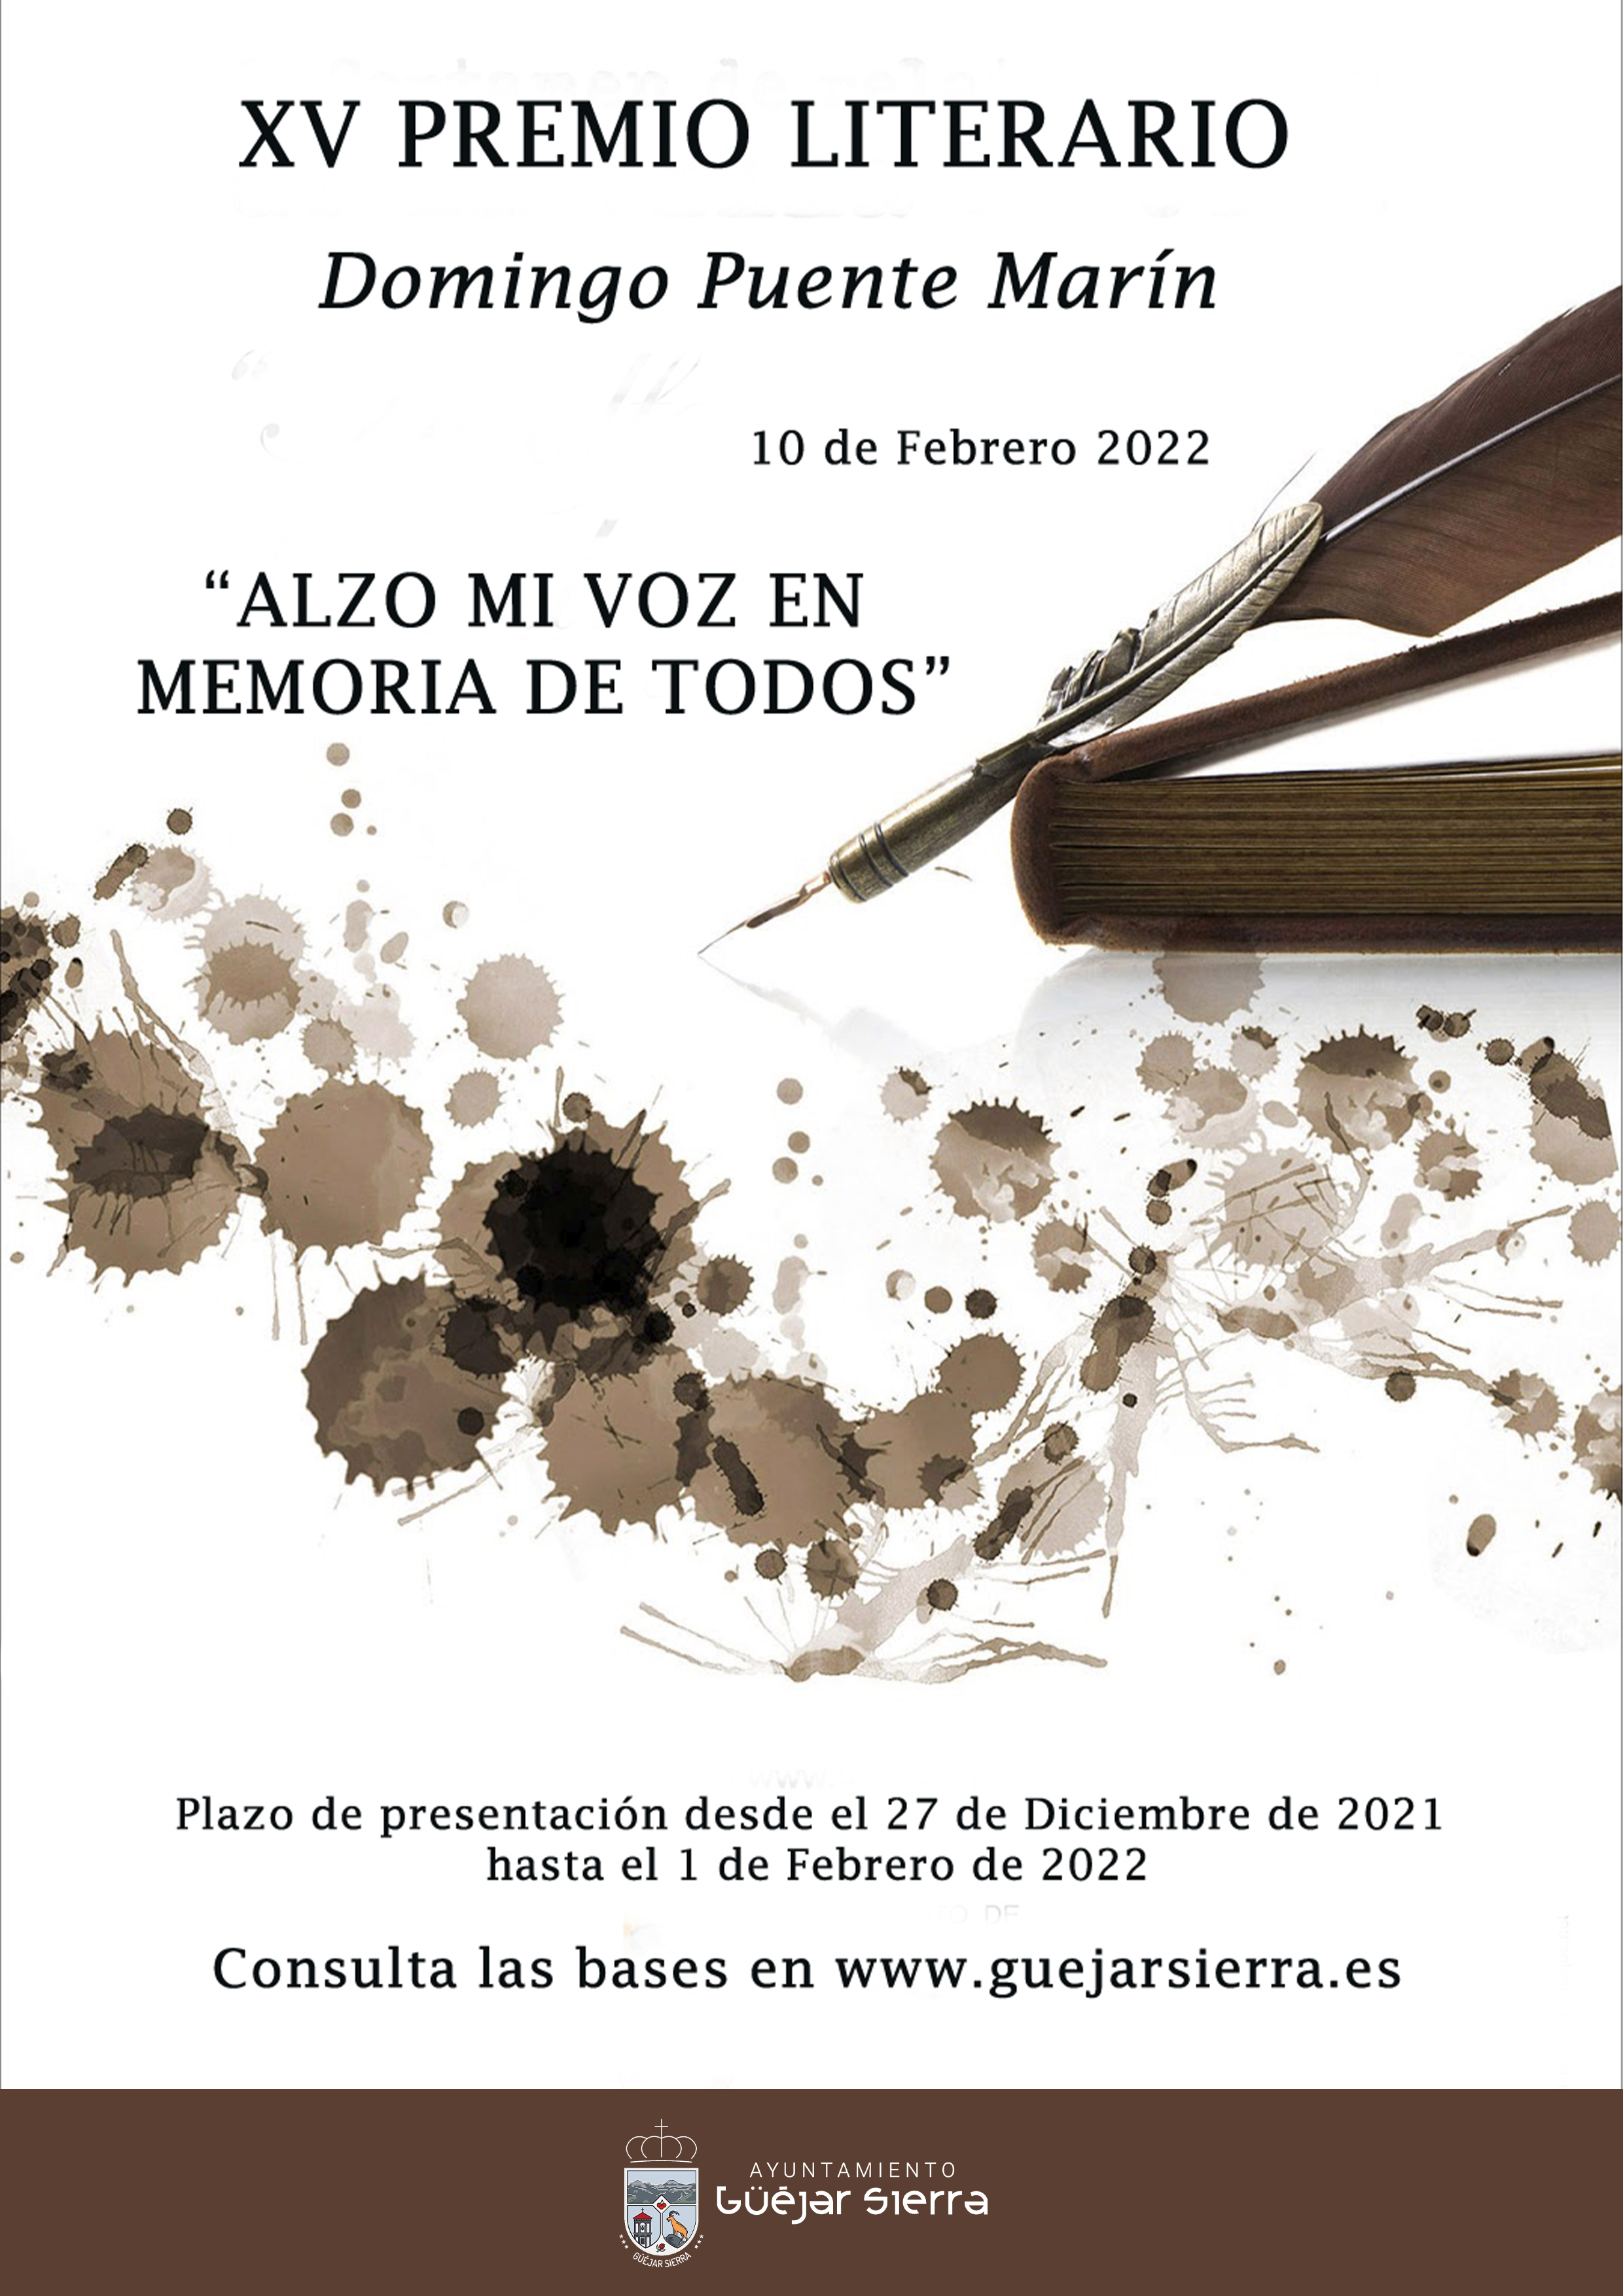 Abierto el plazo de inscripción del XV premio literario Domingo Puente Marín